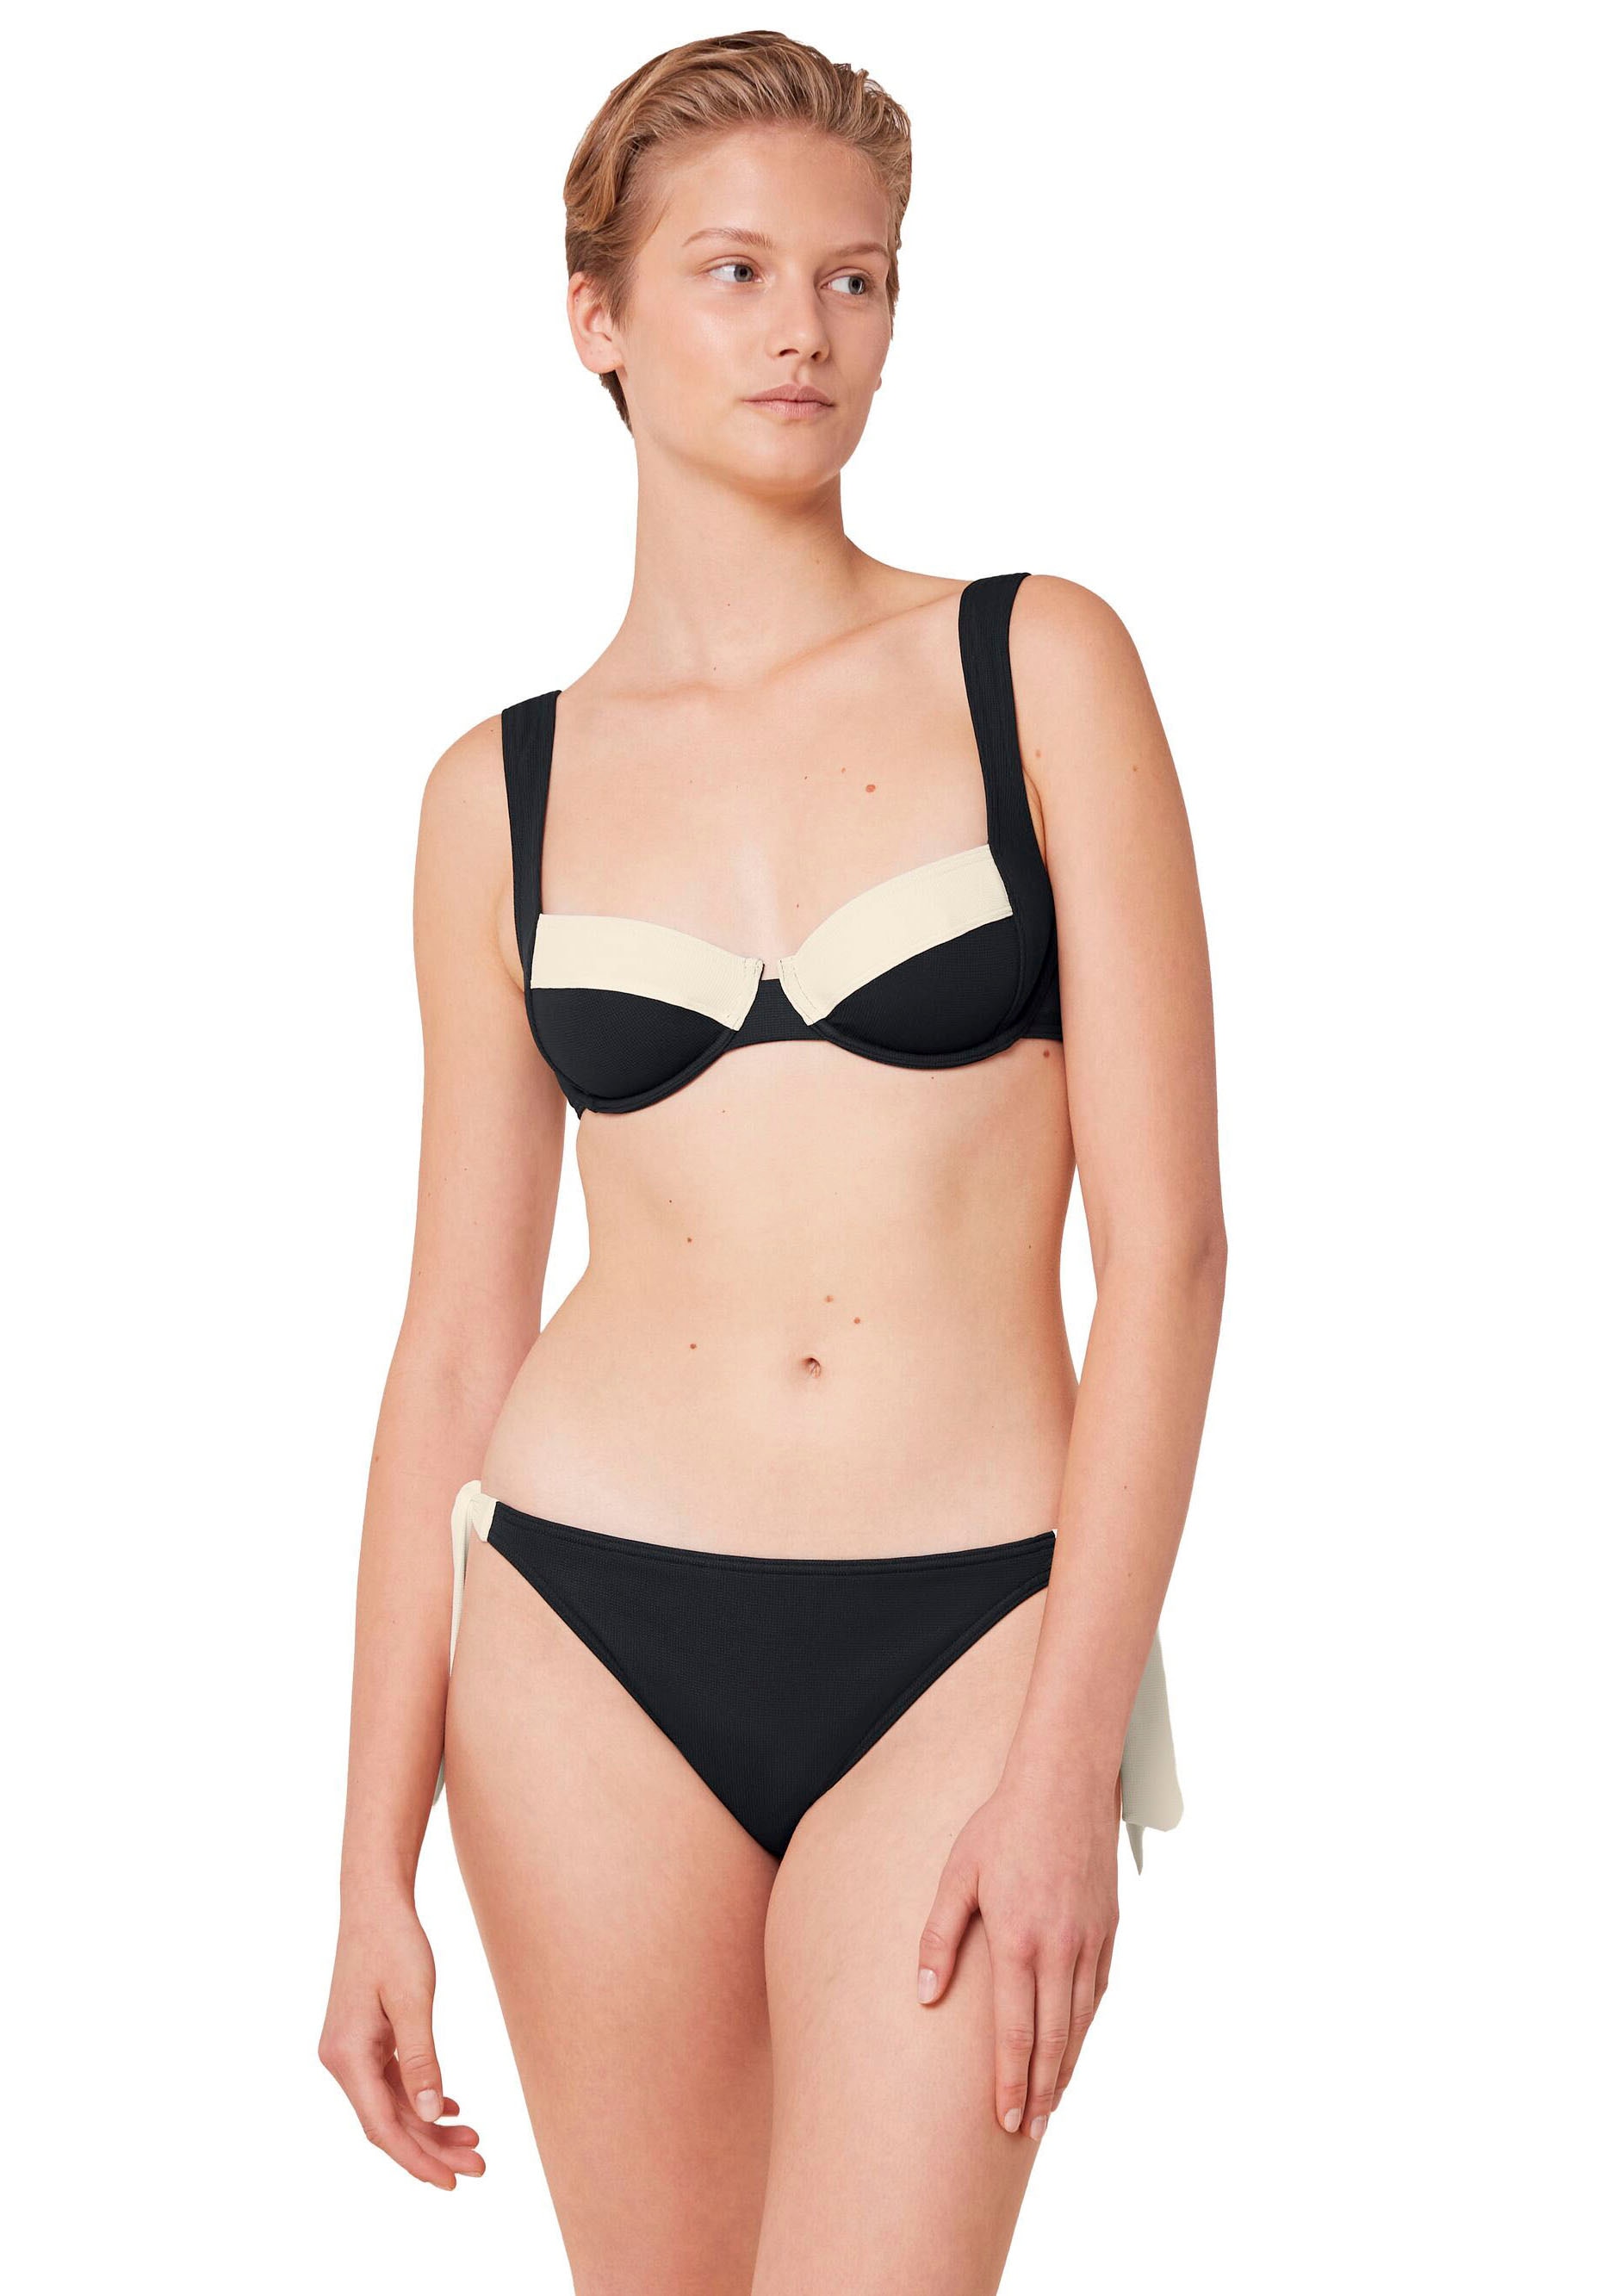 Triumph Balconette-Bikini-Top "Summer Glow W 02 sd", Struktur-Piqué mit schmeichelhaft geschnittenem Dekolleté, zweifarb